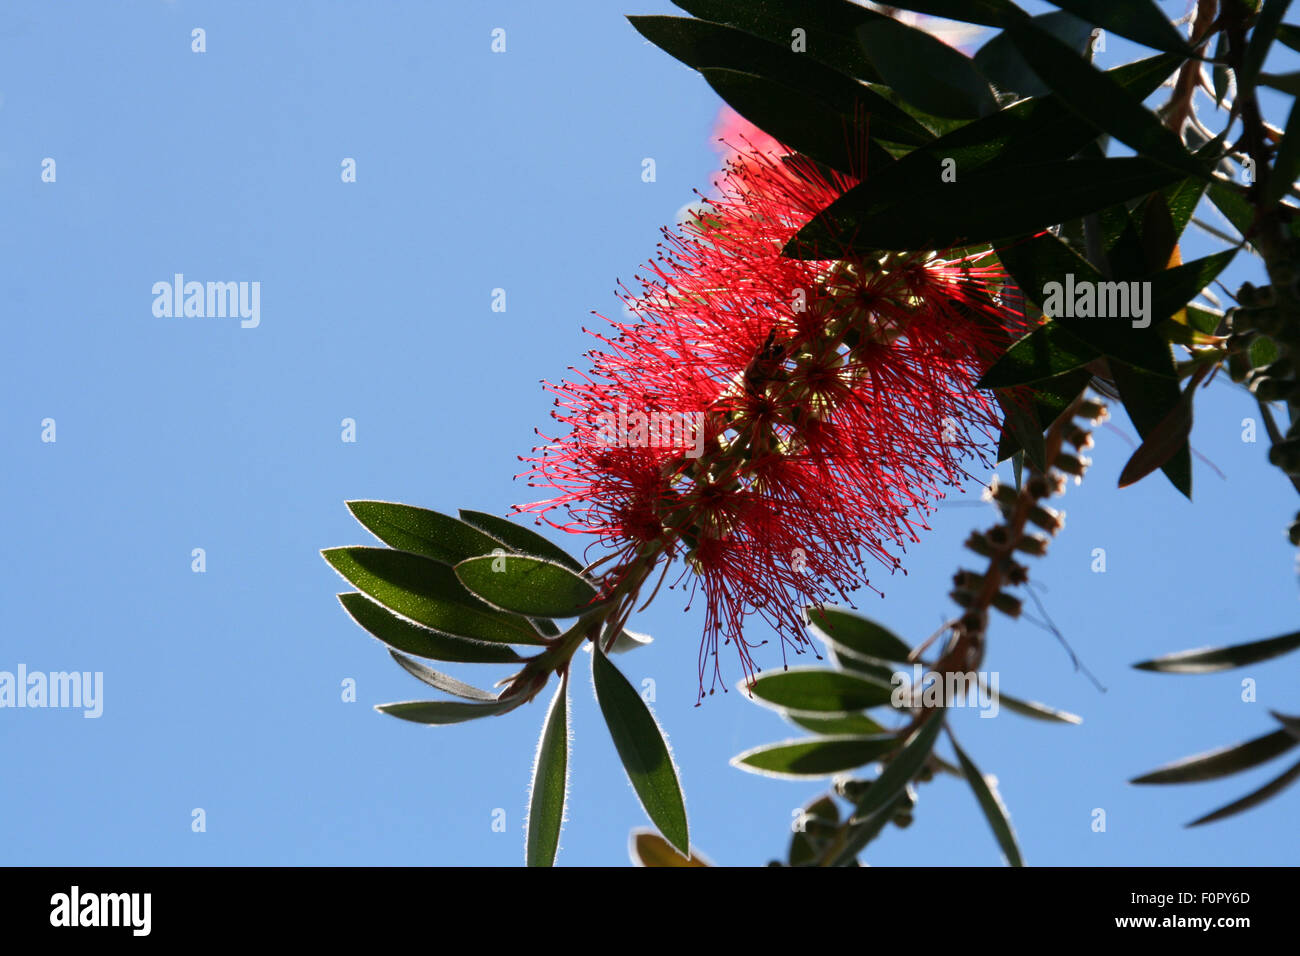 Flaschenbürste Pflanze mit roten Blüten Stockfotografie - Alamy